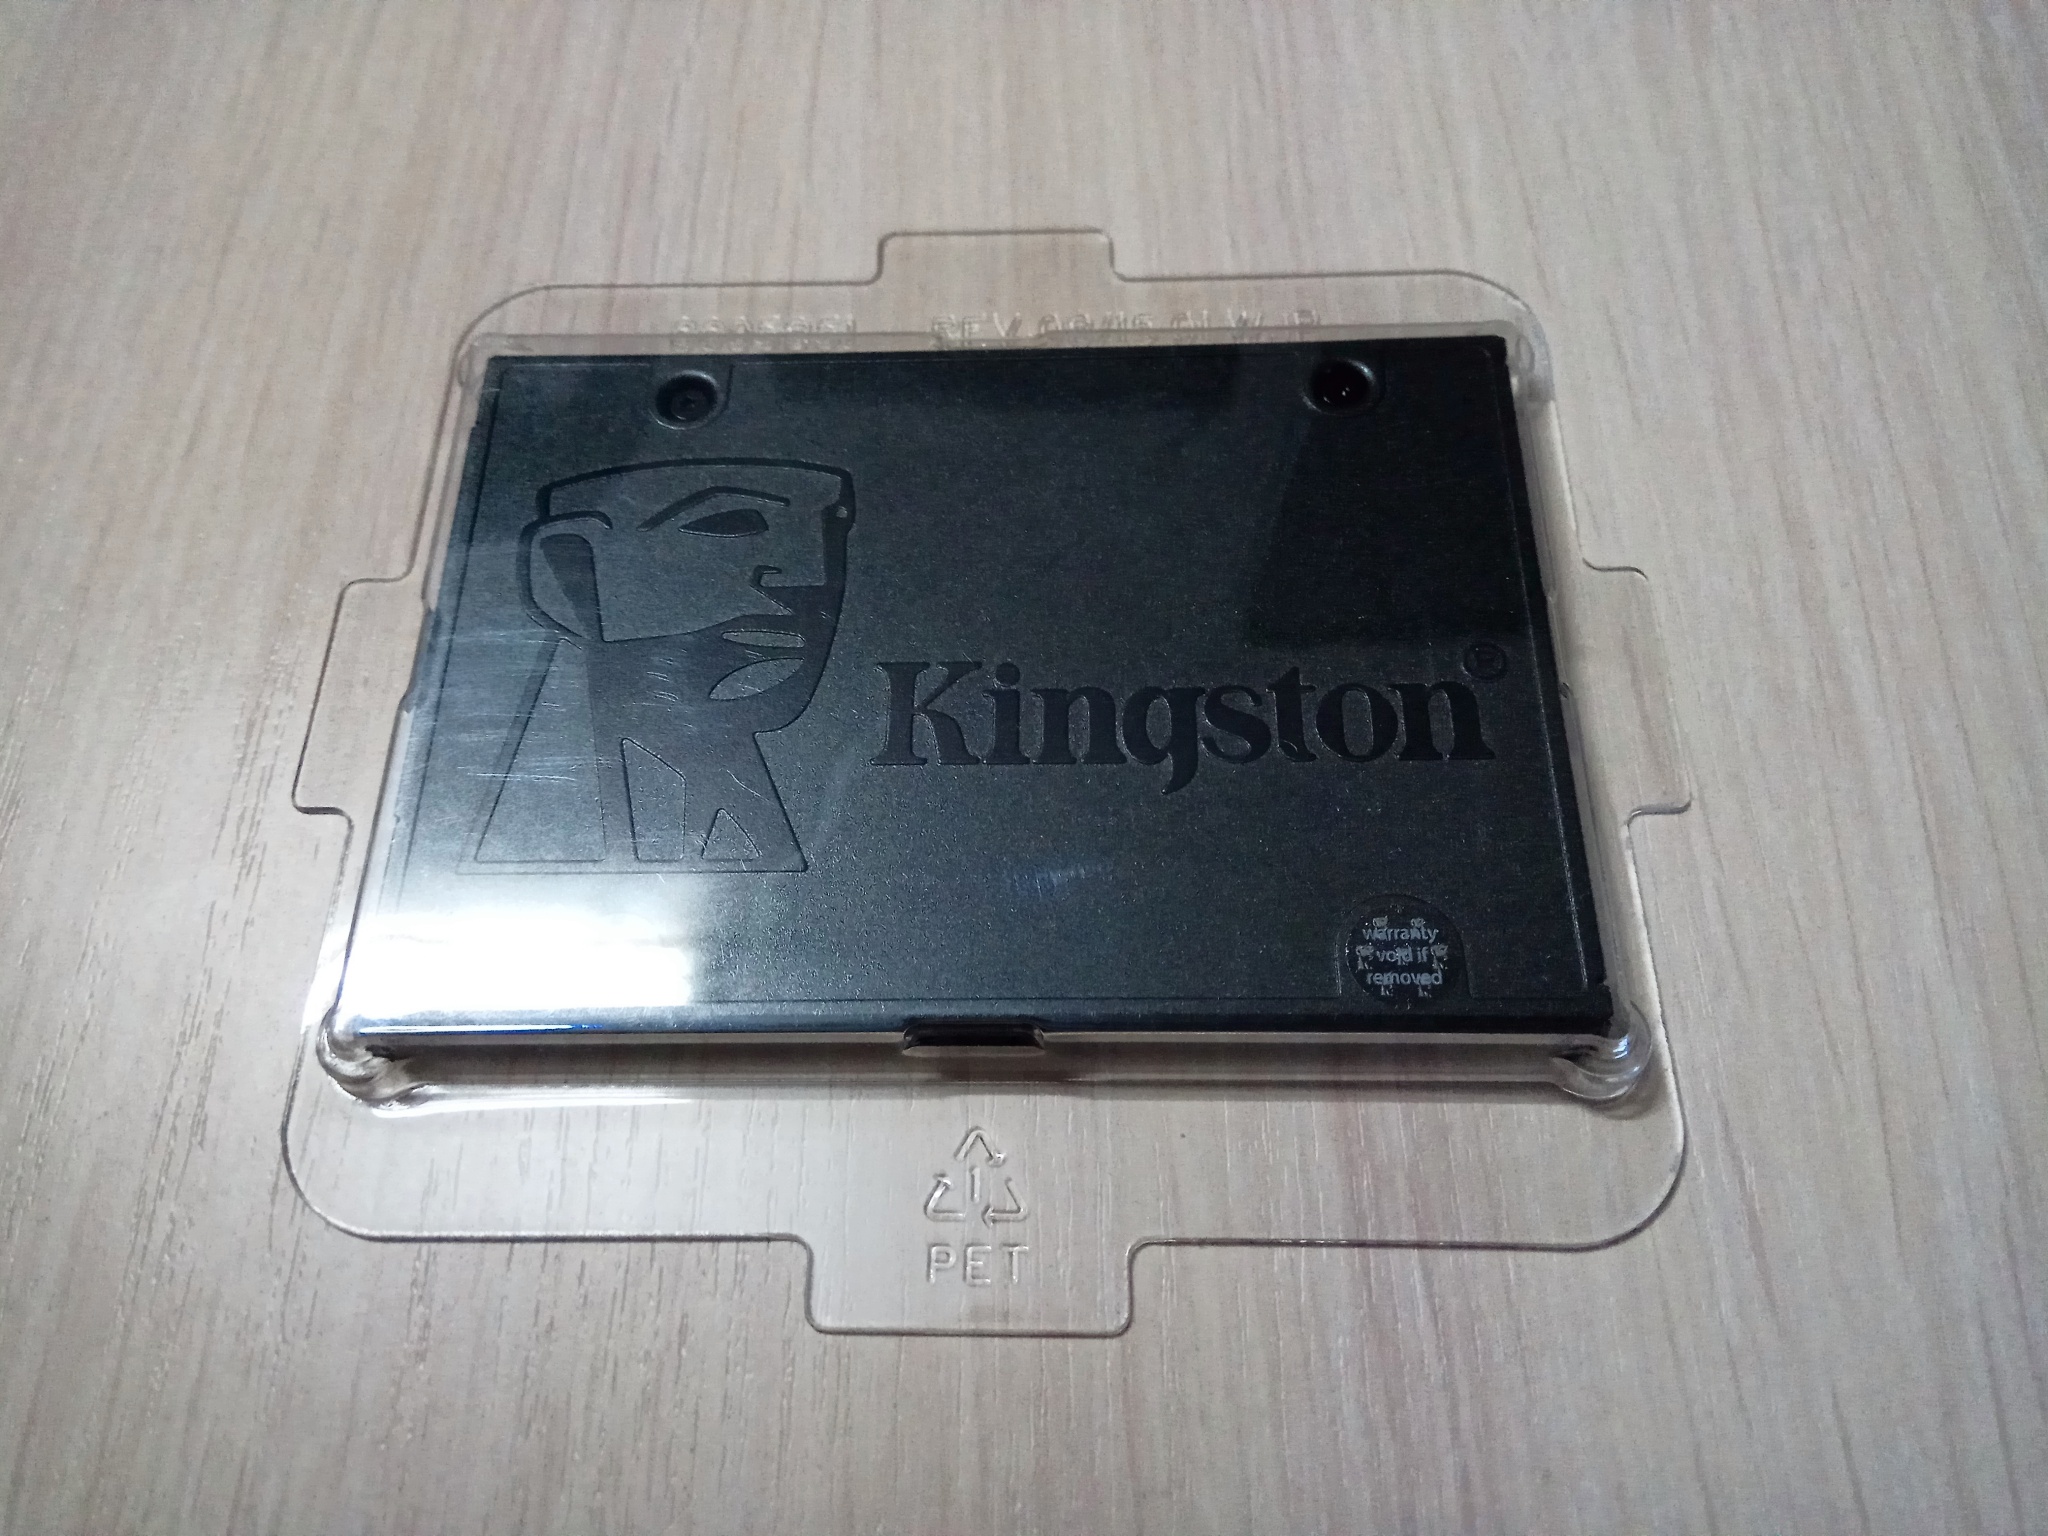 Накопитель ssd a400 ssd sa400s37 240g. SSD Kingston a400 240gb TLC 2,5"" SATAIII. 240 ГБ 2.5" SATA накопитель Kingston a400 [sa400s37/240g]. Sa400s37/240g Repair. Диск SSD2.5 Kingston 240gb a400 его функции и возможности.